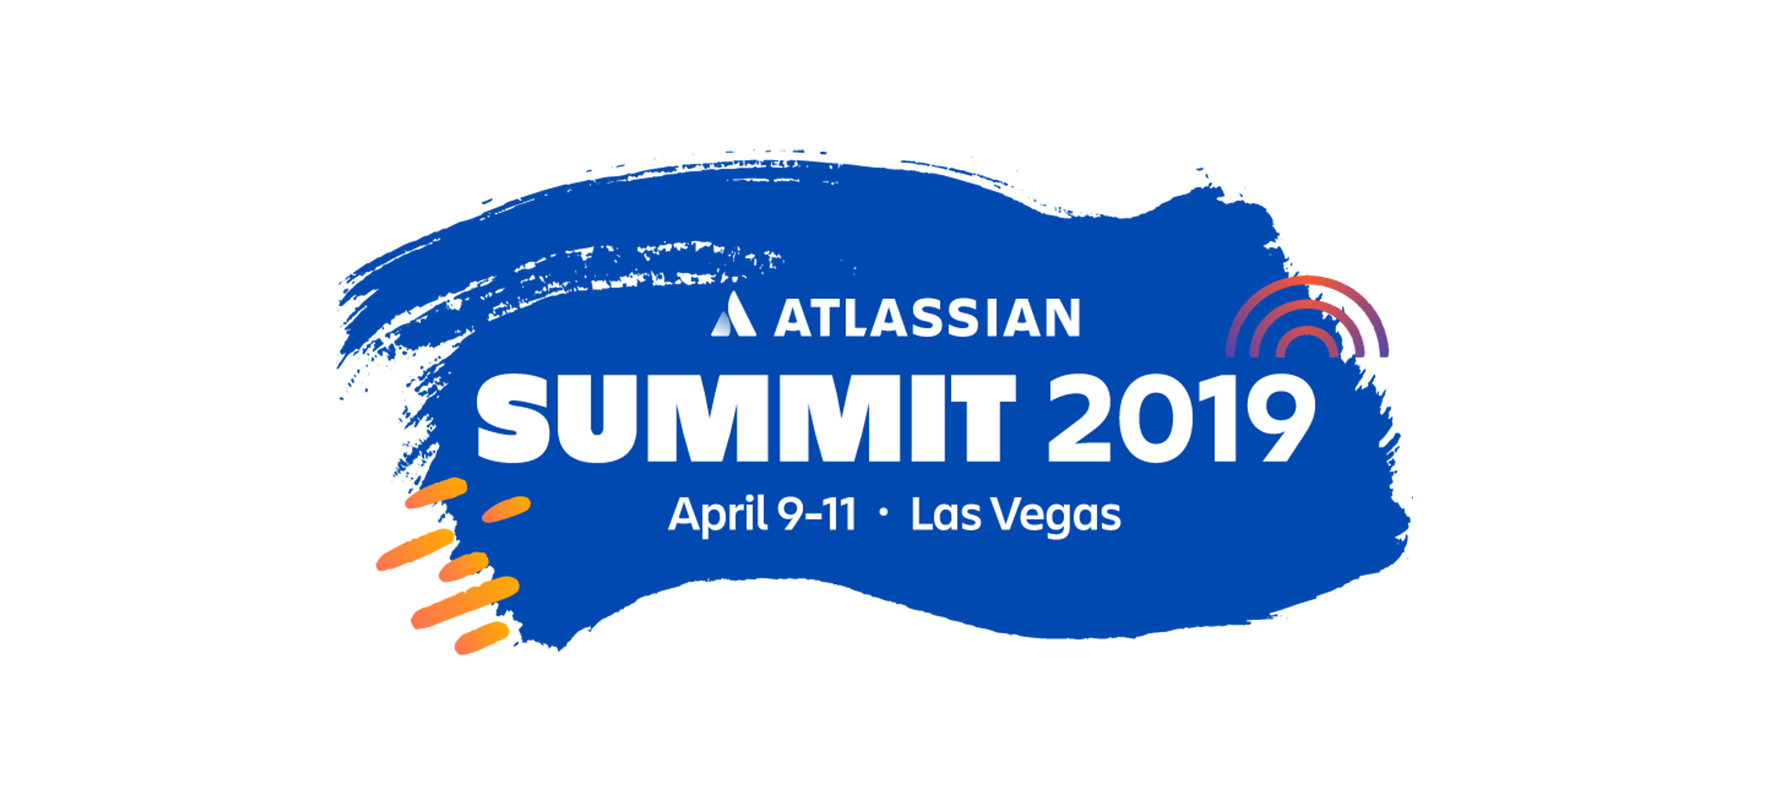 Werbebanner des Atlassian Summit 2019 am 9. - 11.04.2019 in Las Vegas.